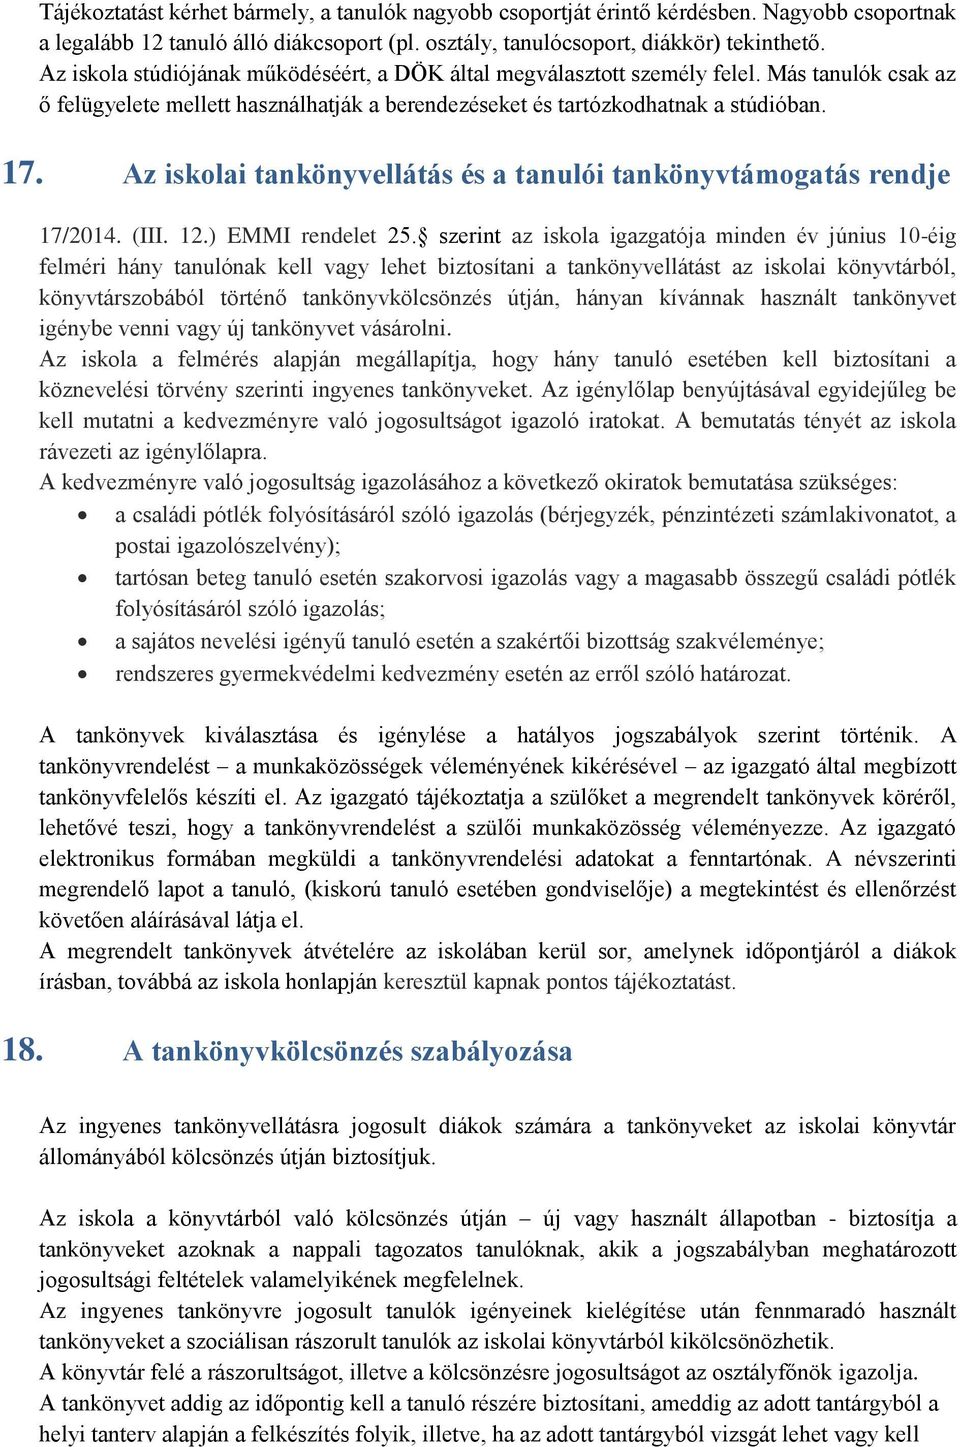 Az iskolai tankönyvellátás és a tanulói tankönyvtámogatás rendje 17/2014. (III. 12.) EMMI rendelet 25.